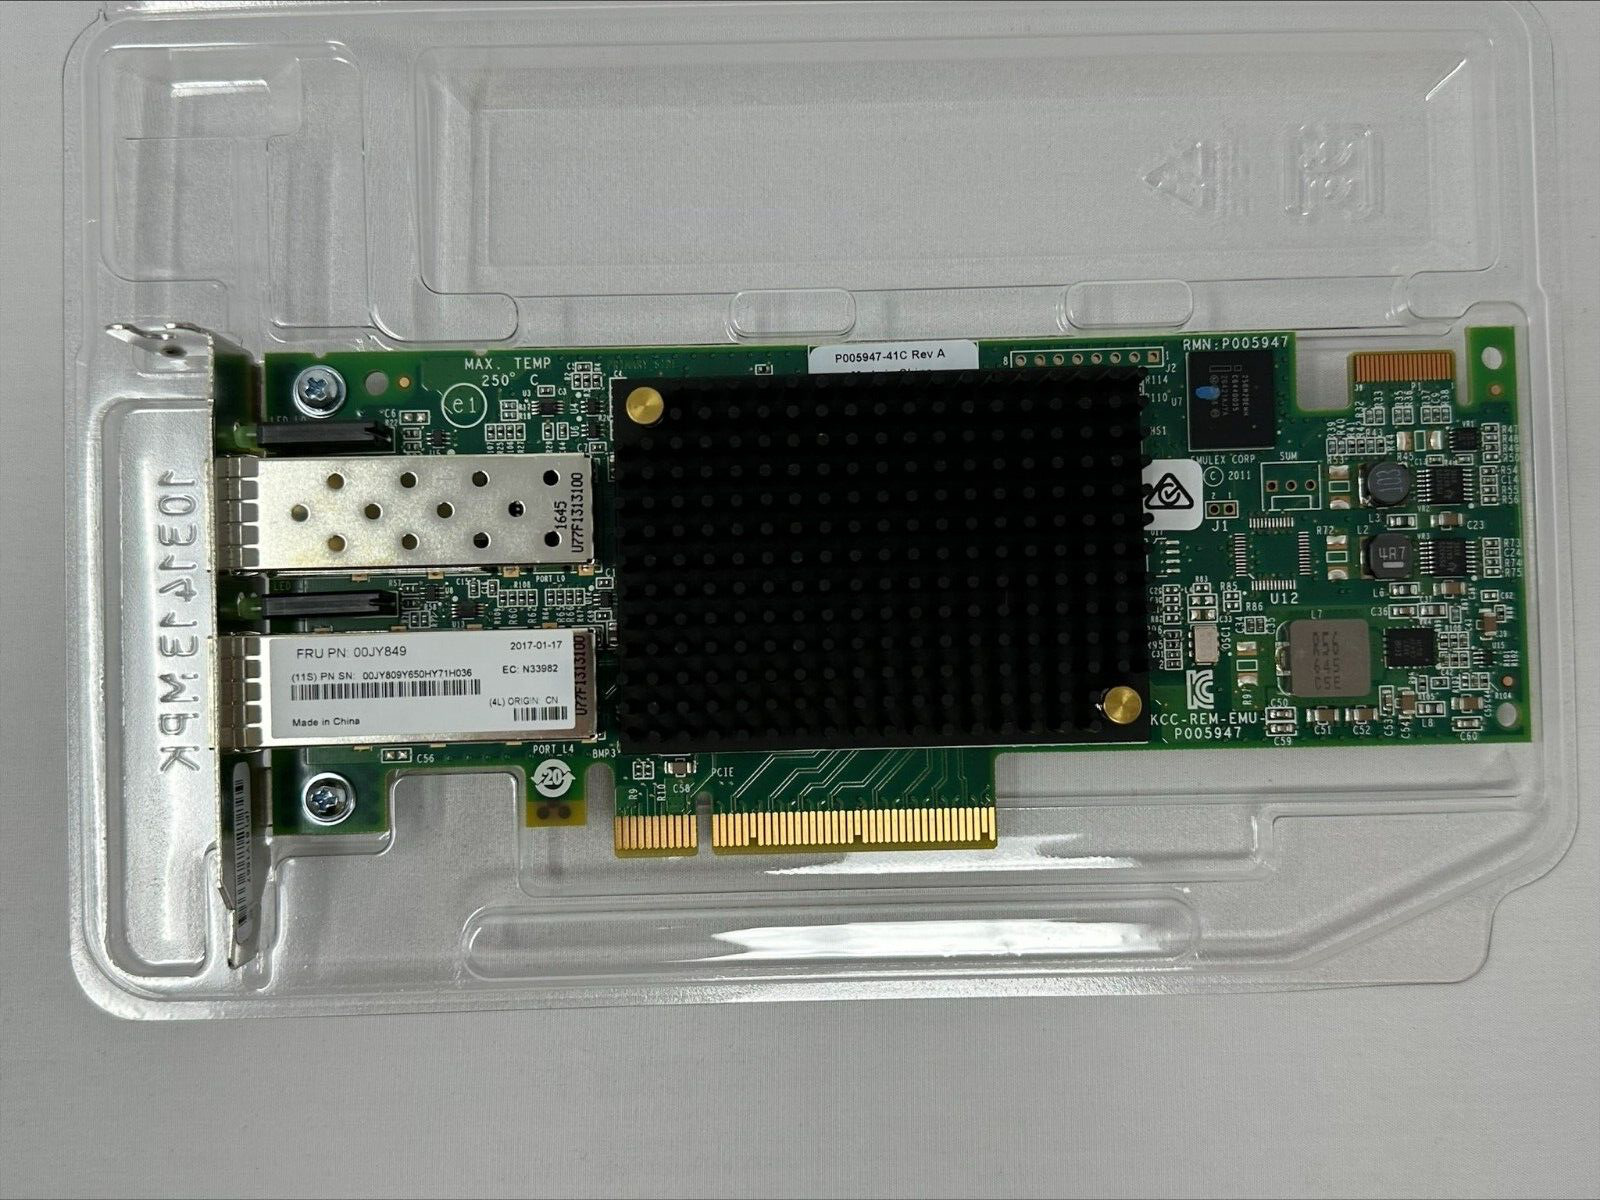 LPE16002 LENOVO/EMULEX 16GB FIBRE CHANNEL 2P PCI-E ADAPTER 00JY849